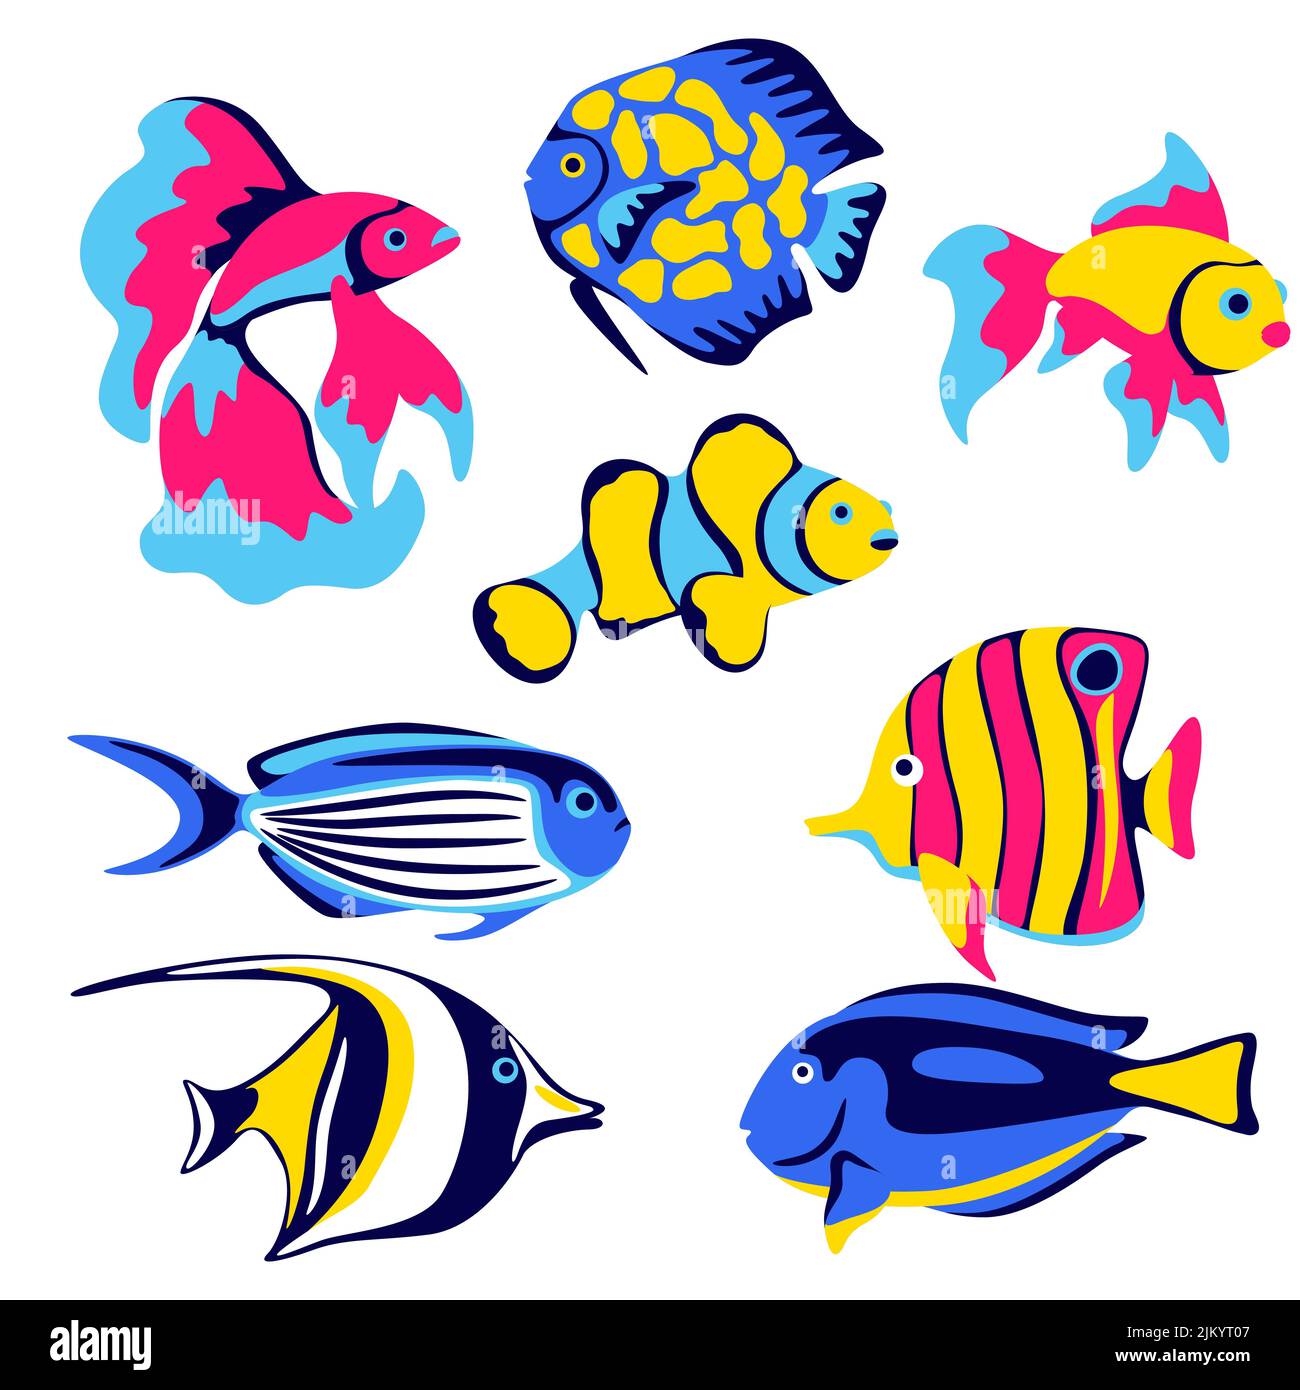 Satz tropischer Fische. Meerwasseraquarium und Meerestiere. Stilisiertes Bild in hellen Farben. Stock Vektor